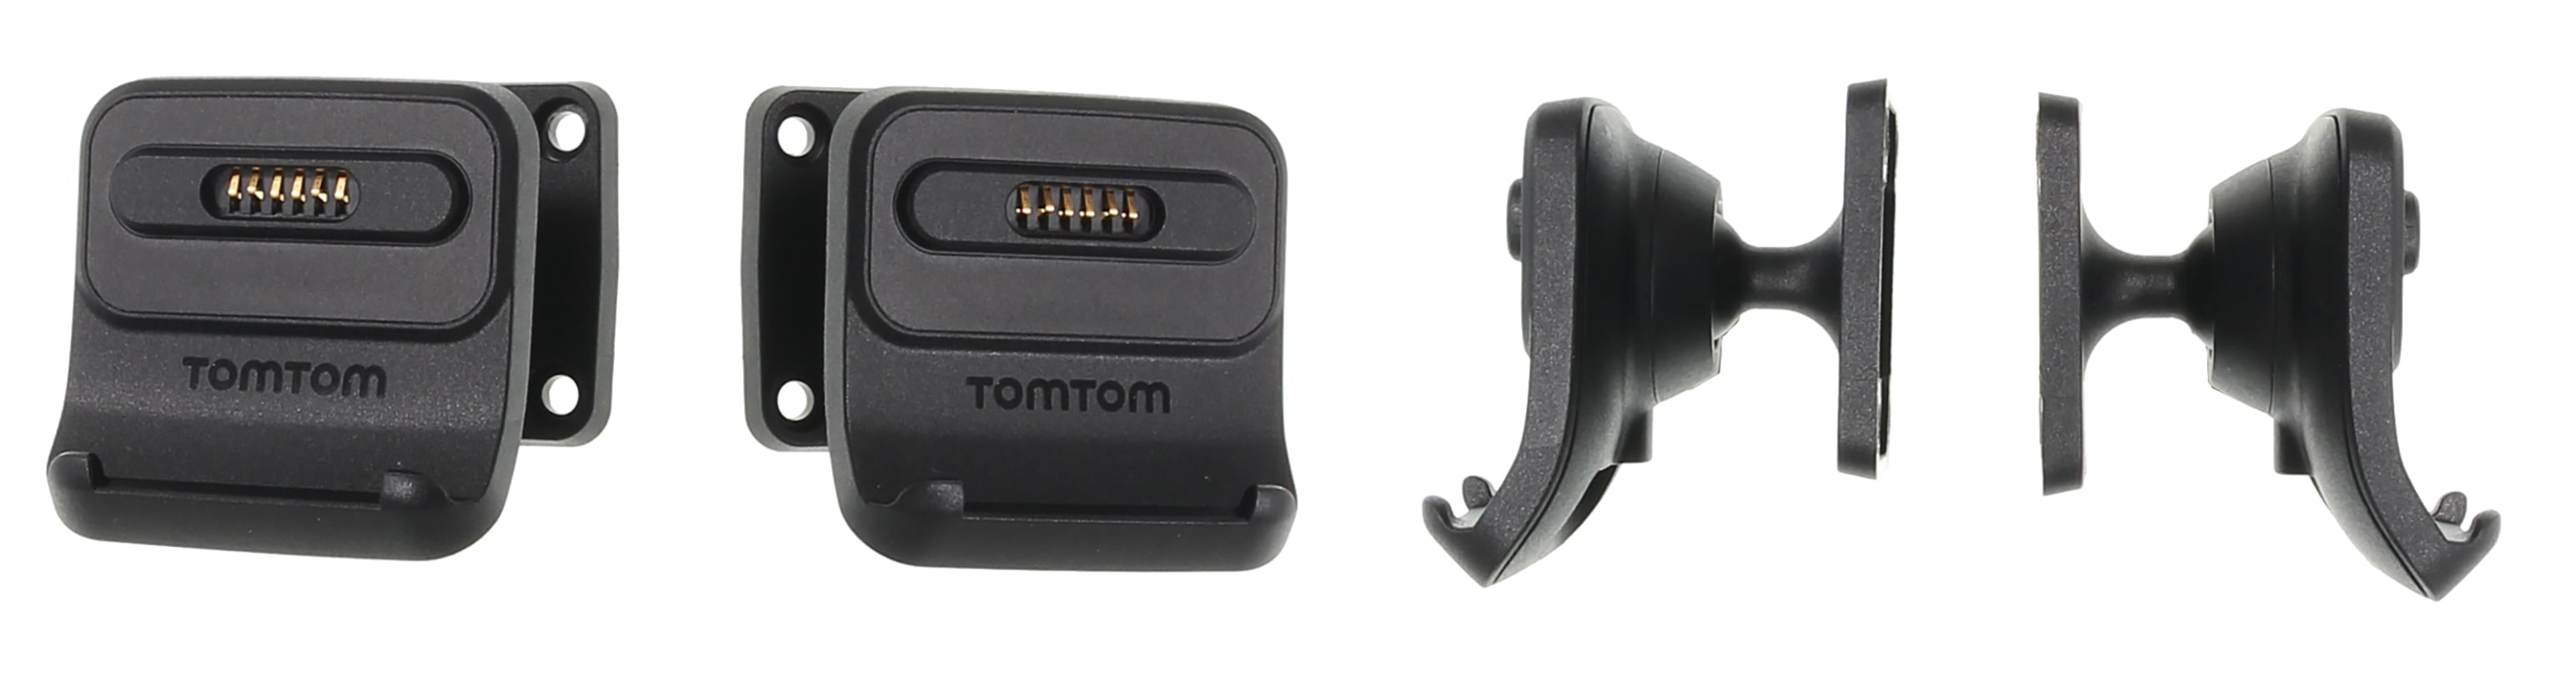 Active Dock Holder with Tilt Swivel for TomTom GO Professional 6200